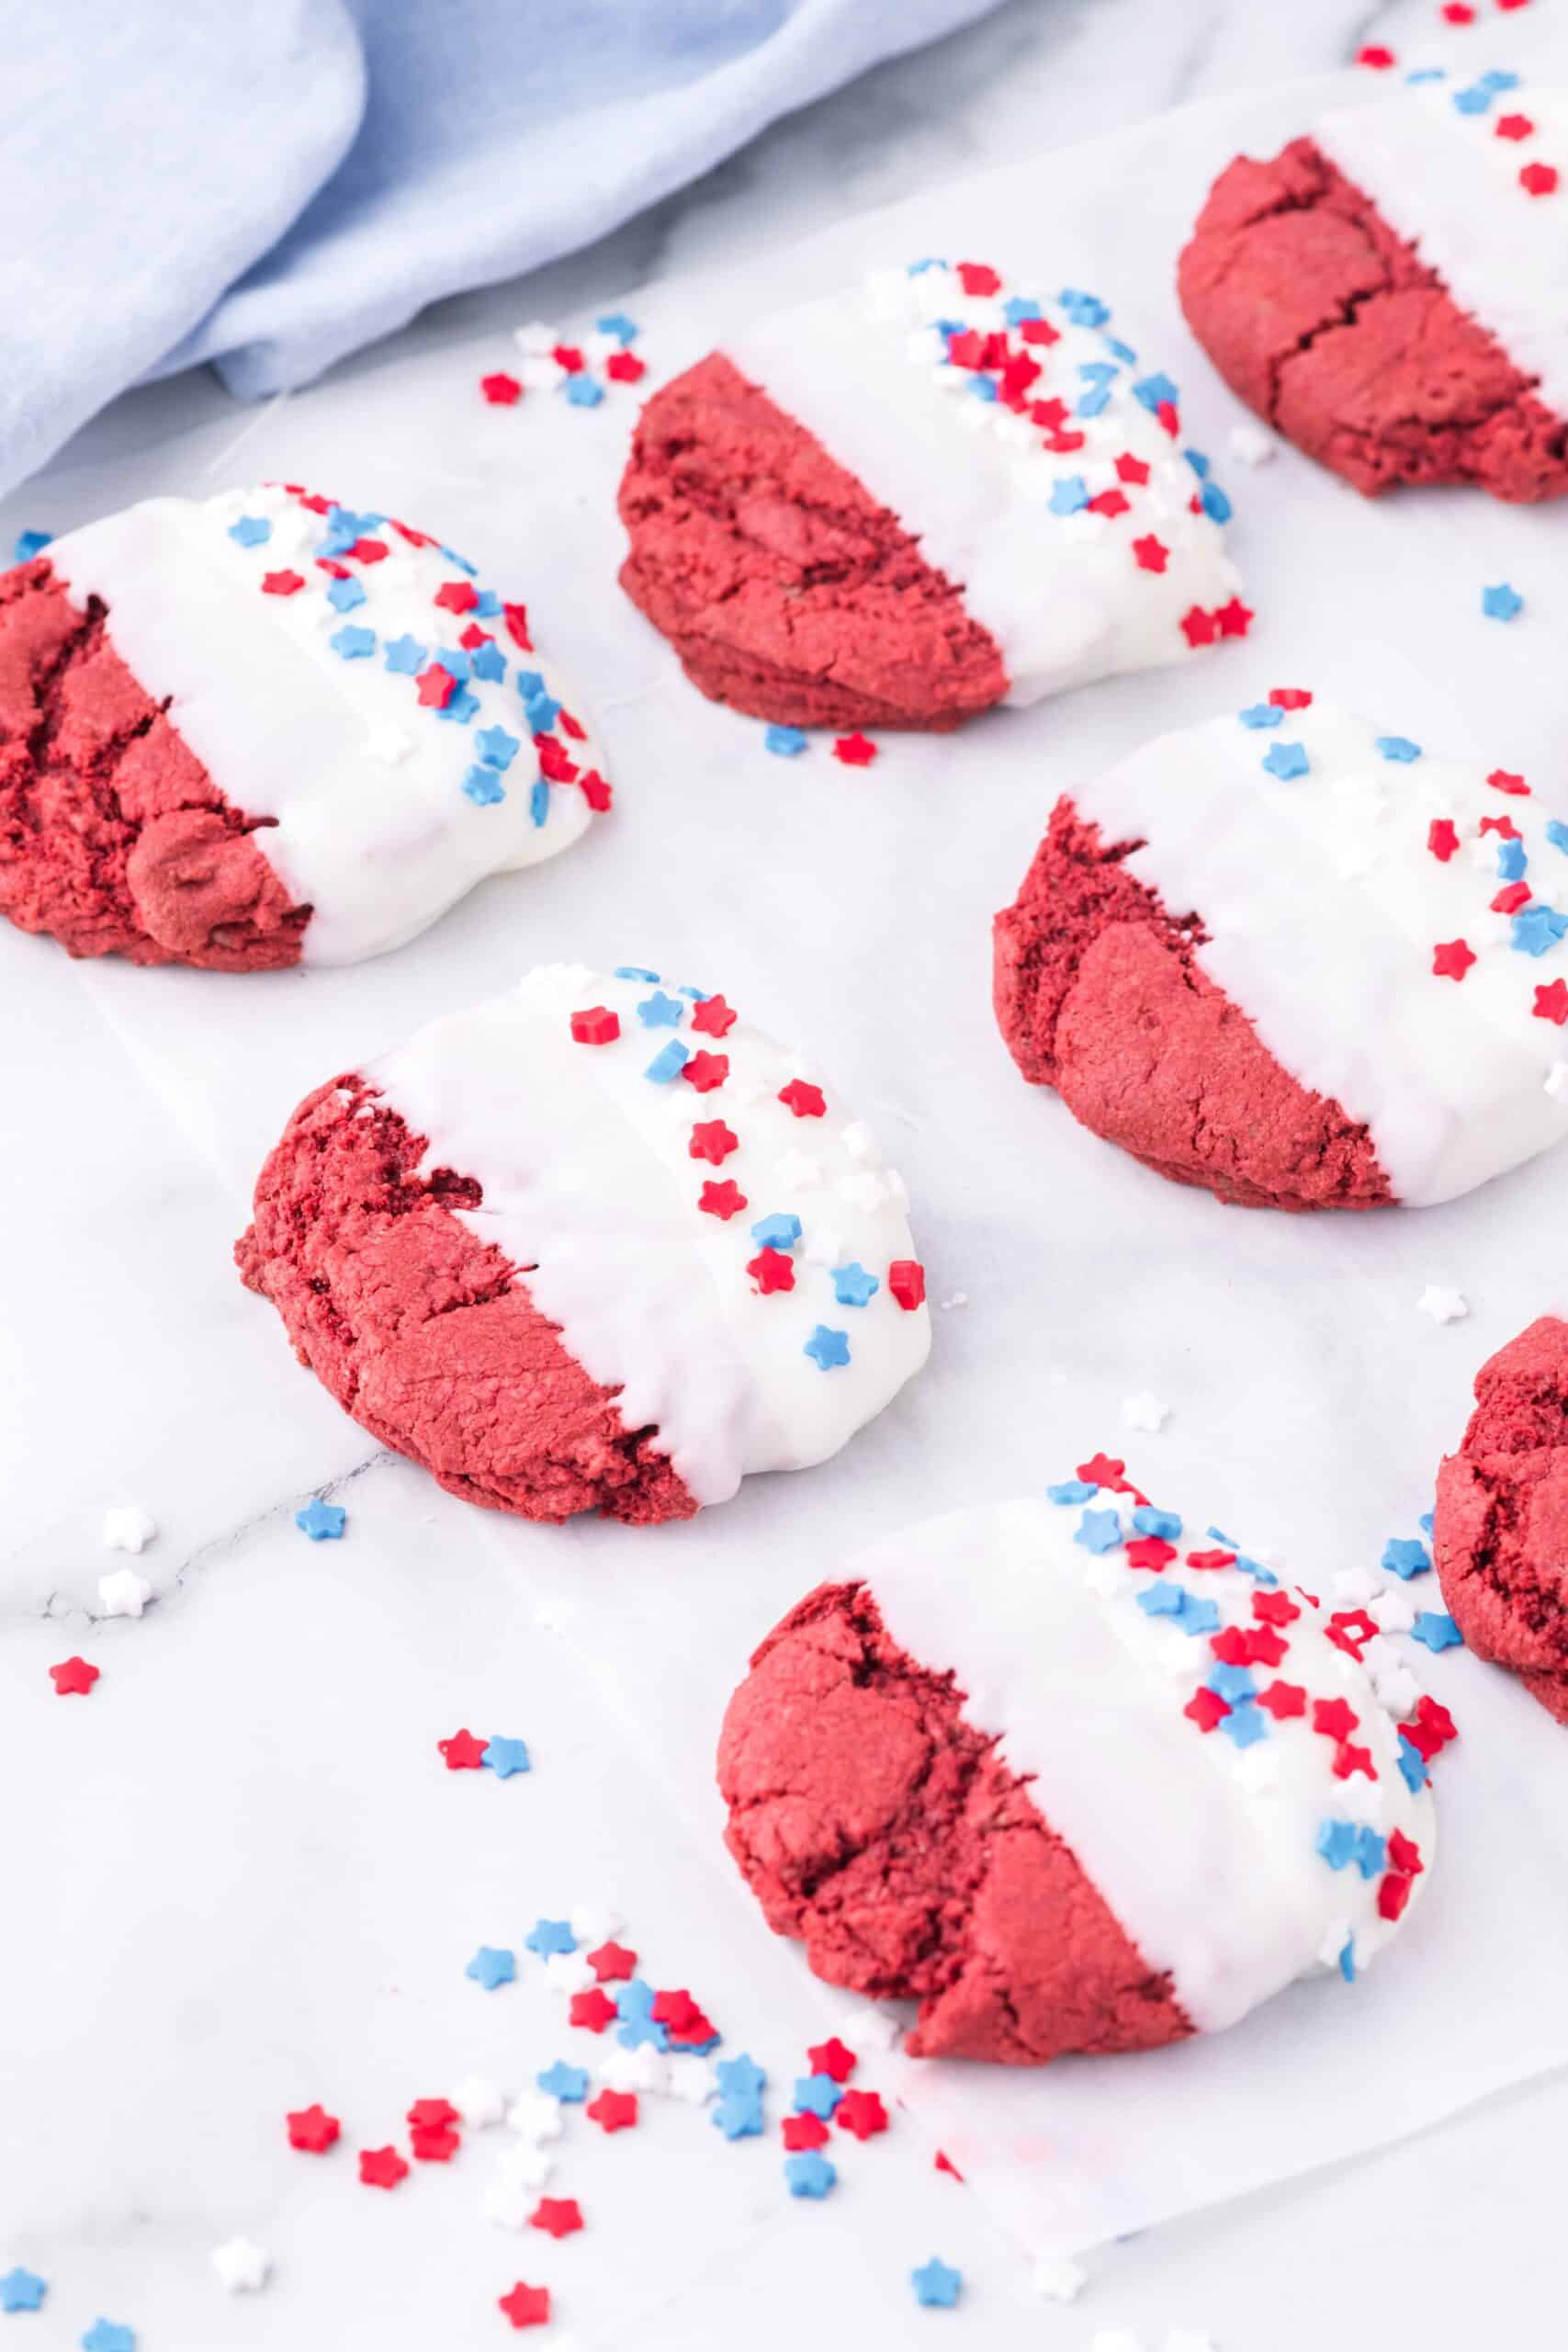 patriotic red velvet cookies (4th July cookies)